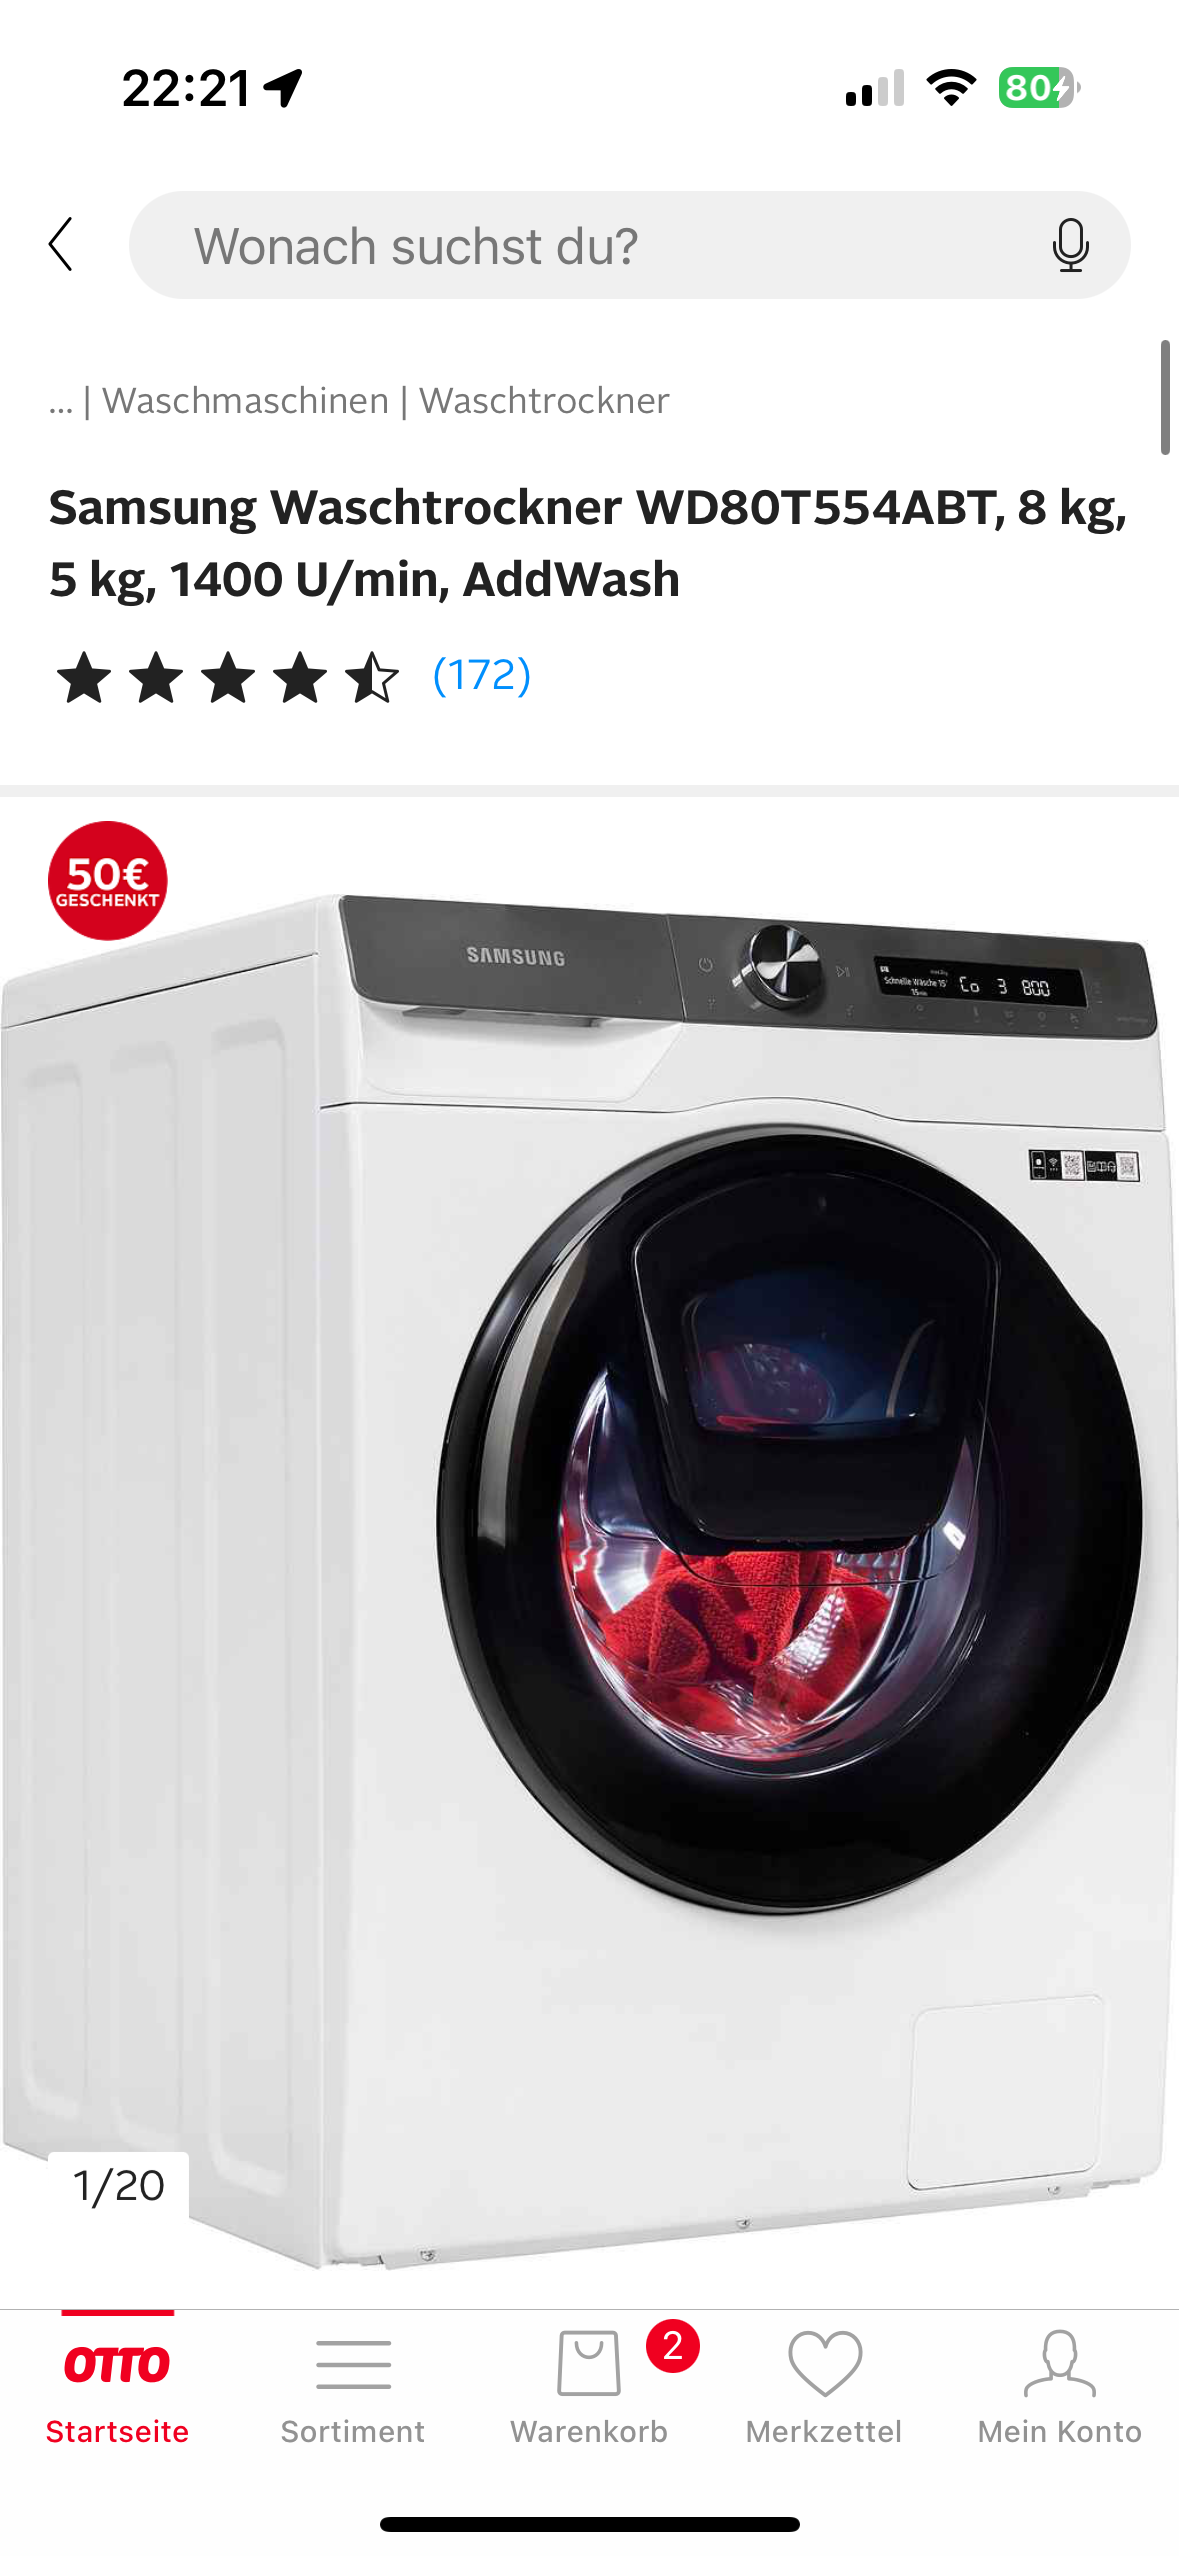 Würdet (Waschmaschine, waschtrockner Trockner) Haushaltsgeräte, diesen kaufen? ihr